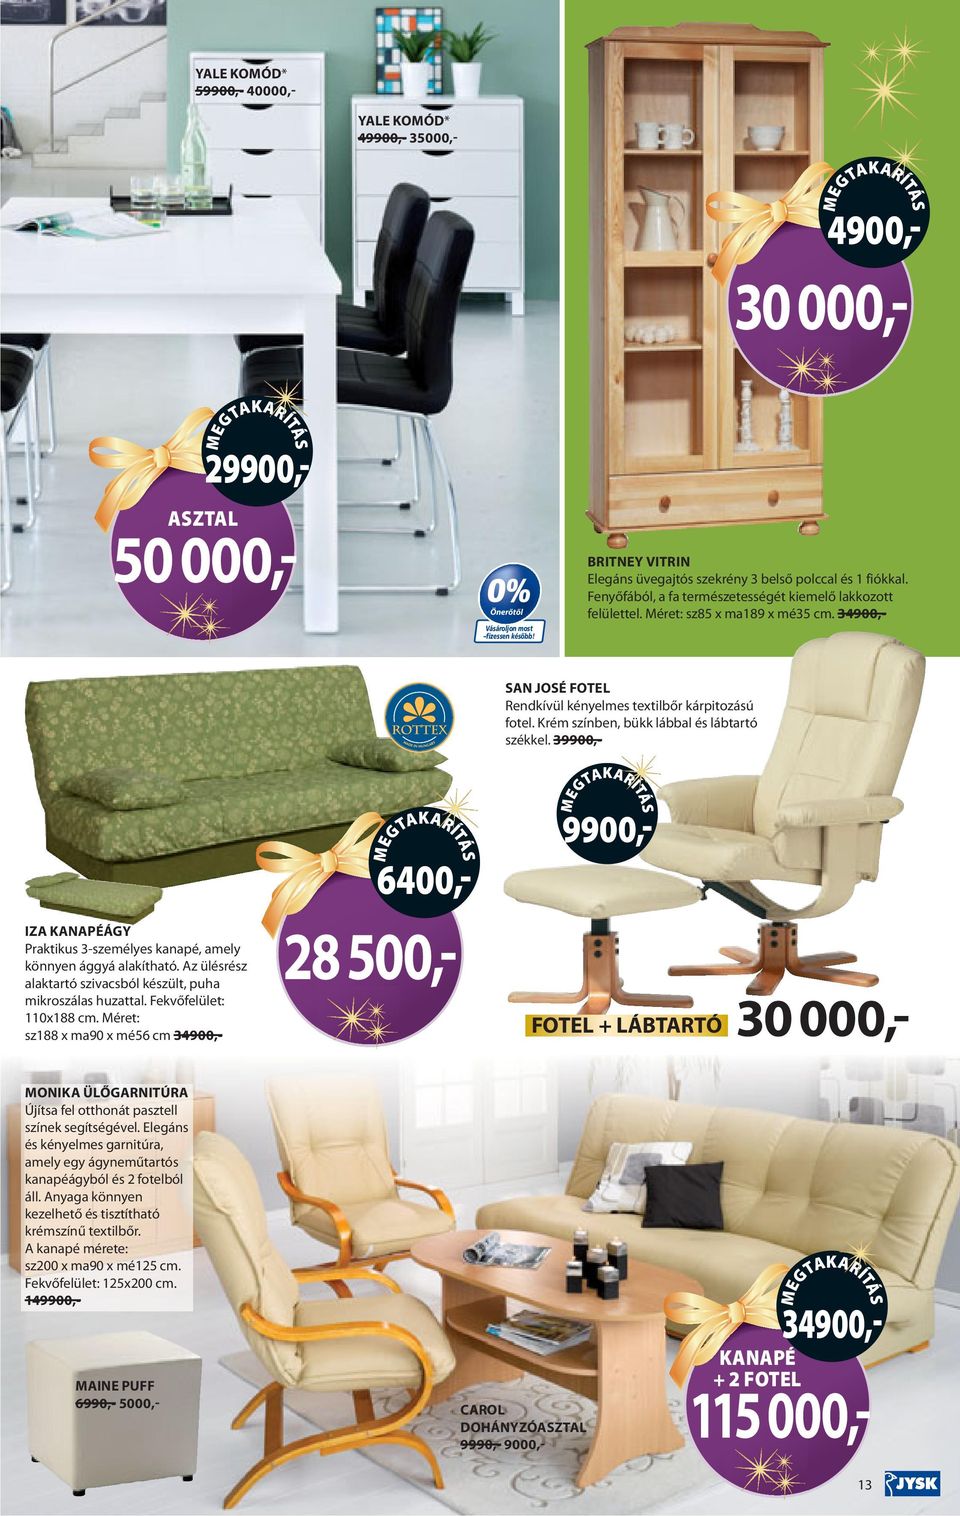 34900,- SAN JOSÉ FOTEL Rendkívül kényelmes textilbőr kárpitozású fotel. Krém színben, bükk lábbal és lábtartó székkel.